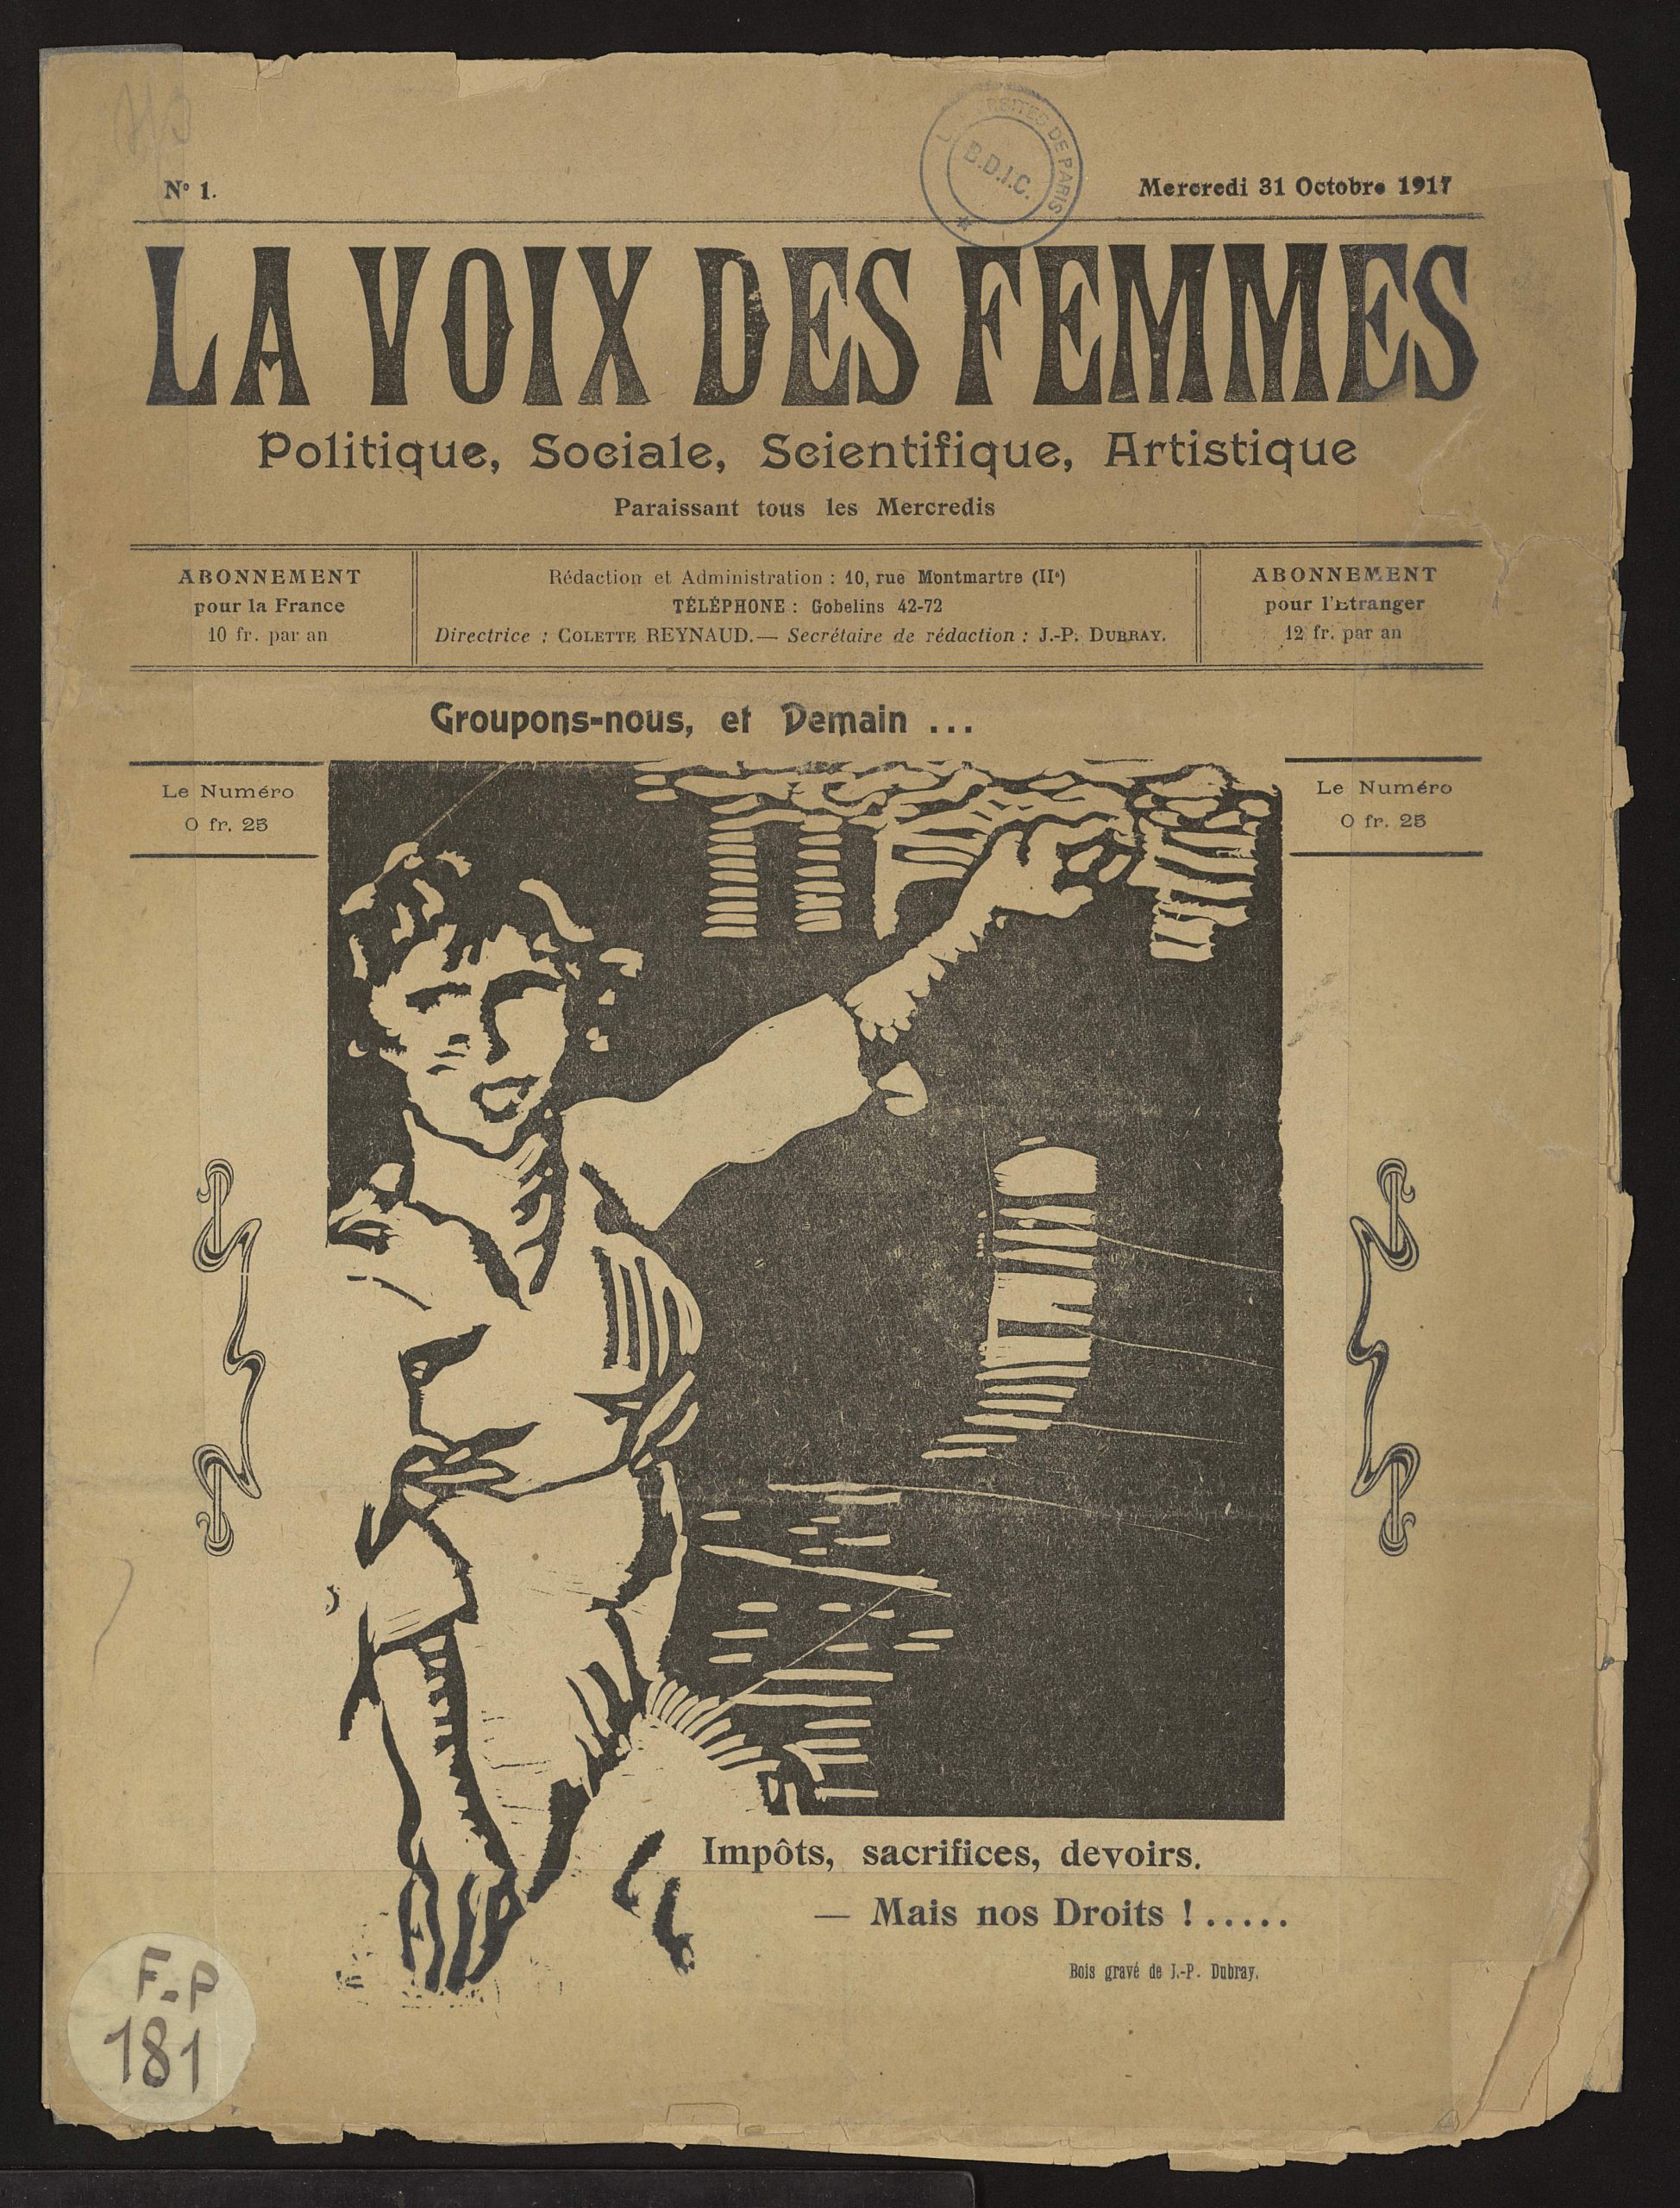 La Voix des femmes (“Tiếng nói của phụ nữ”)